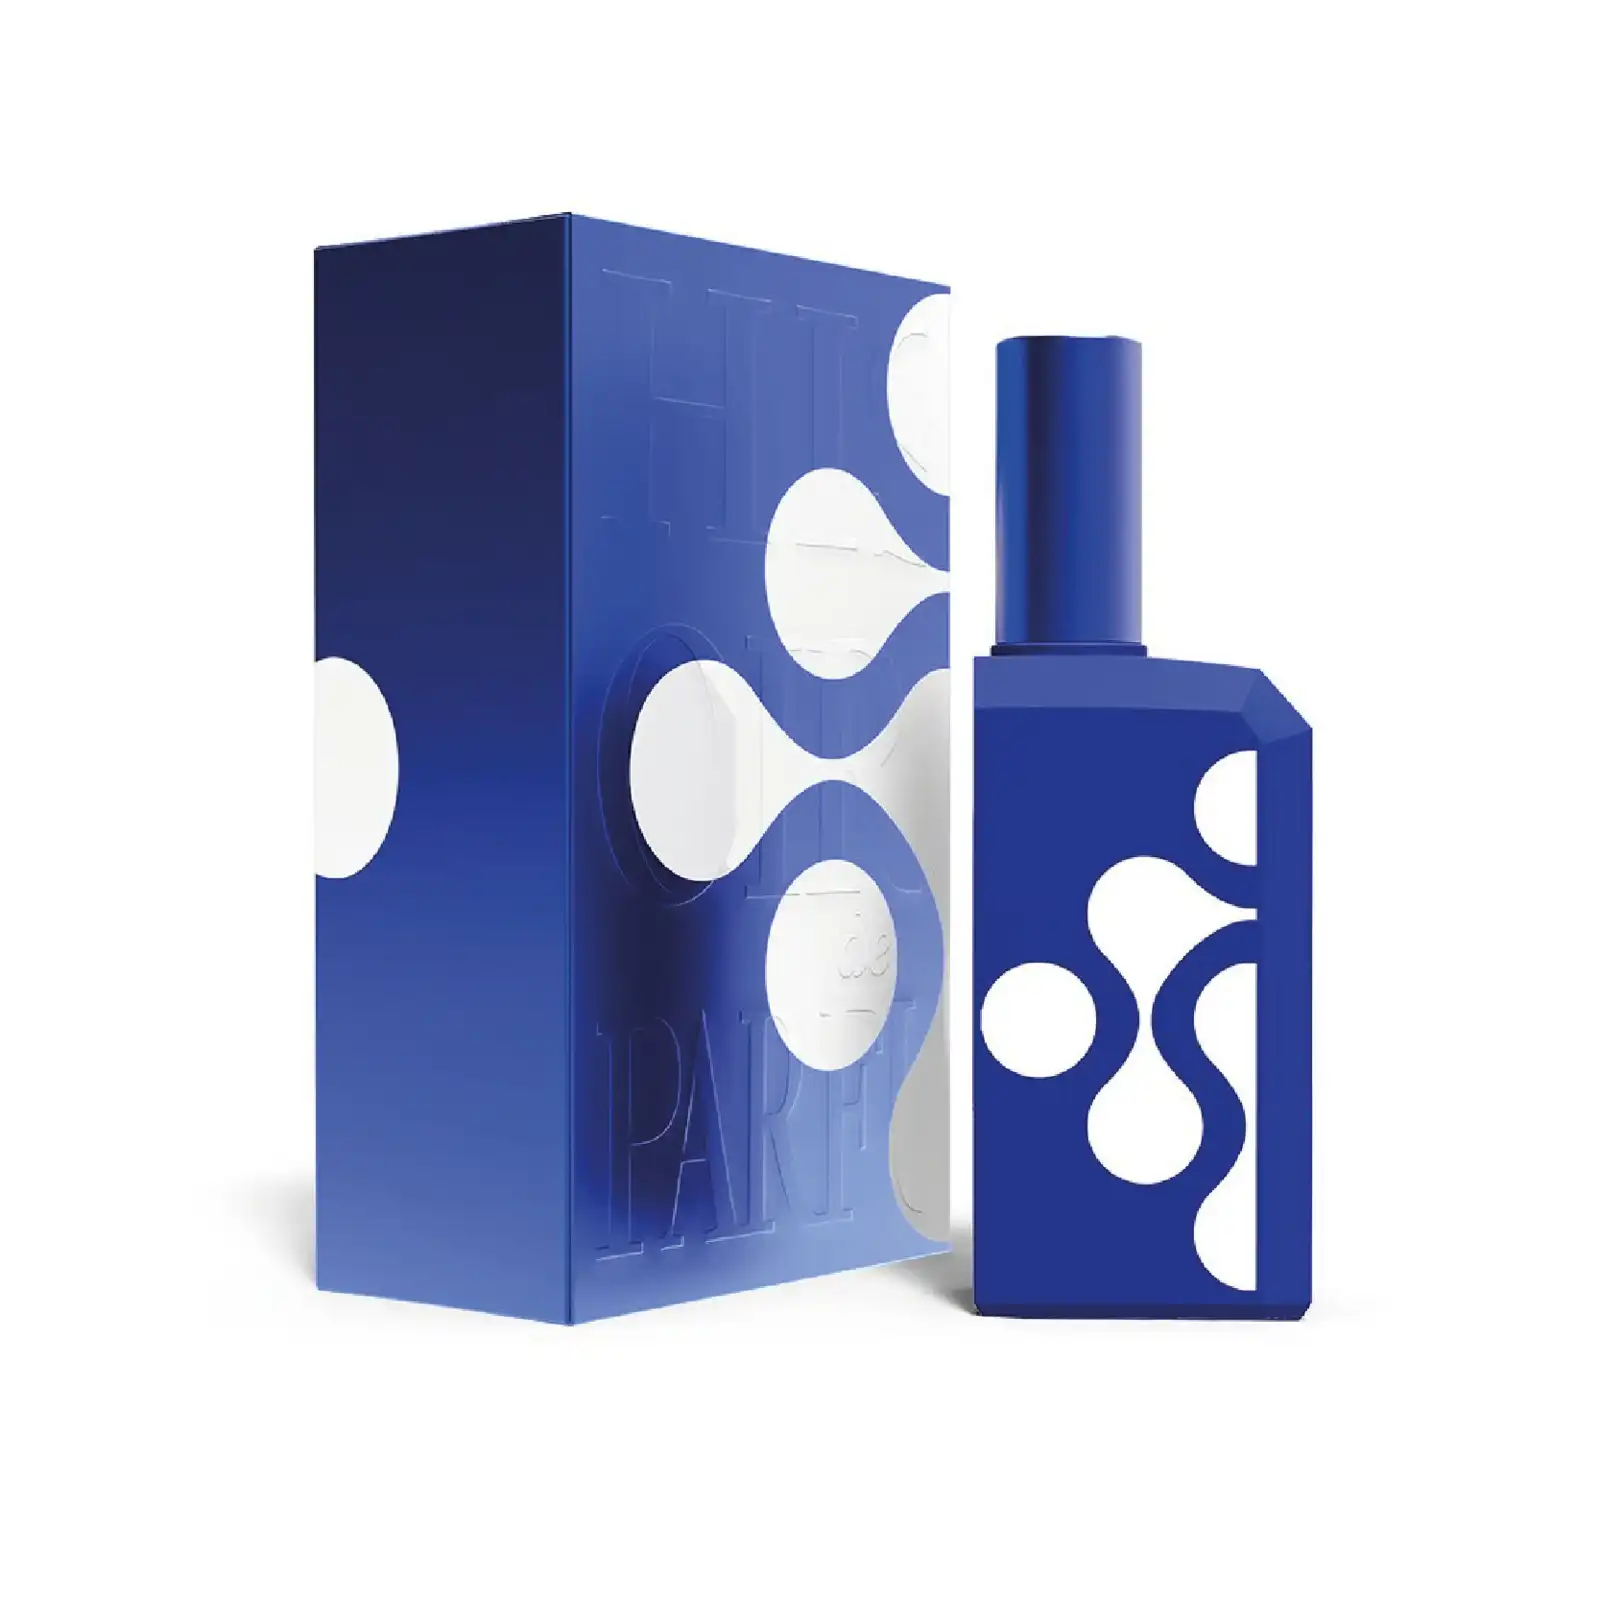 Ceci ñ’est pas un flocon bleu 1_4 – Histoires de Parfums (Unisex)